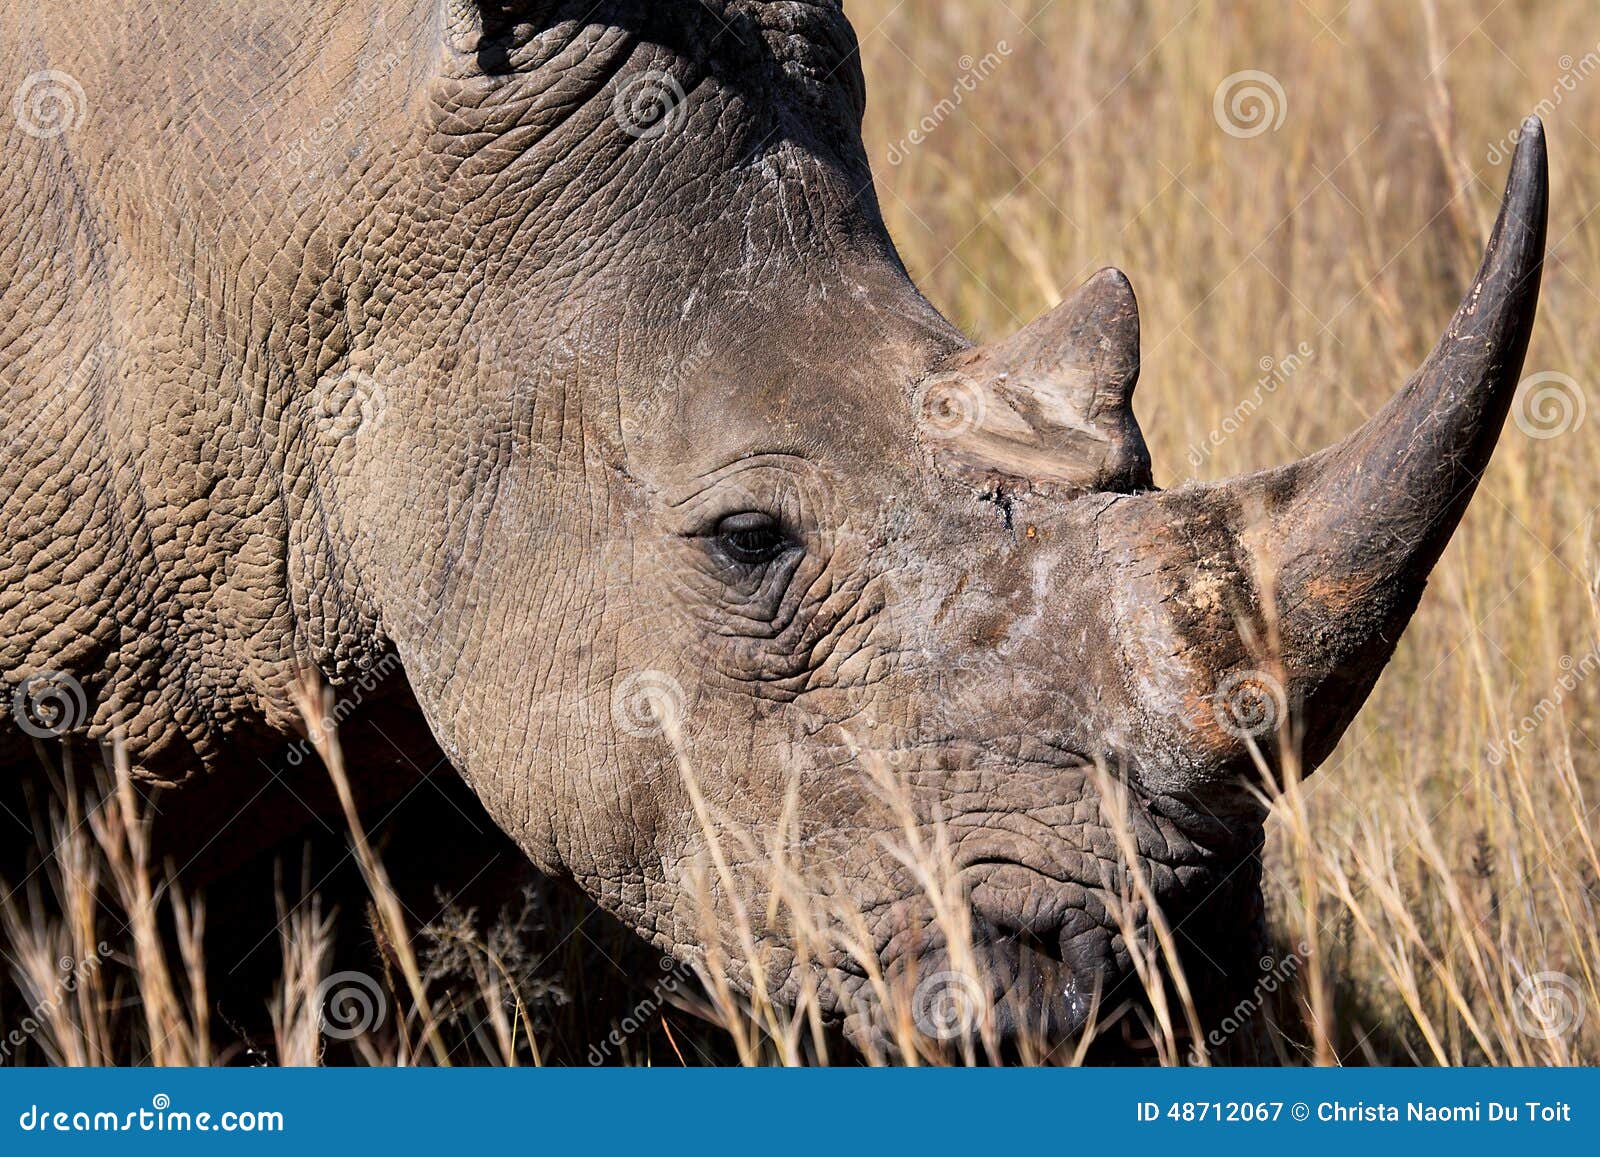 endangered white rhino